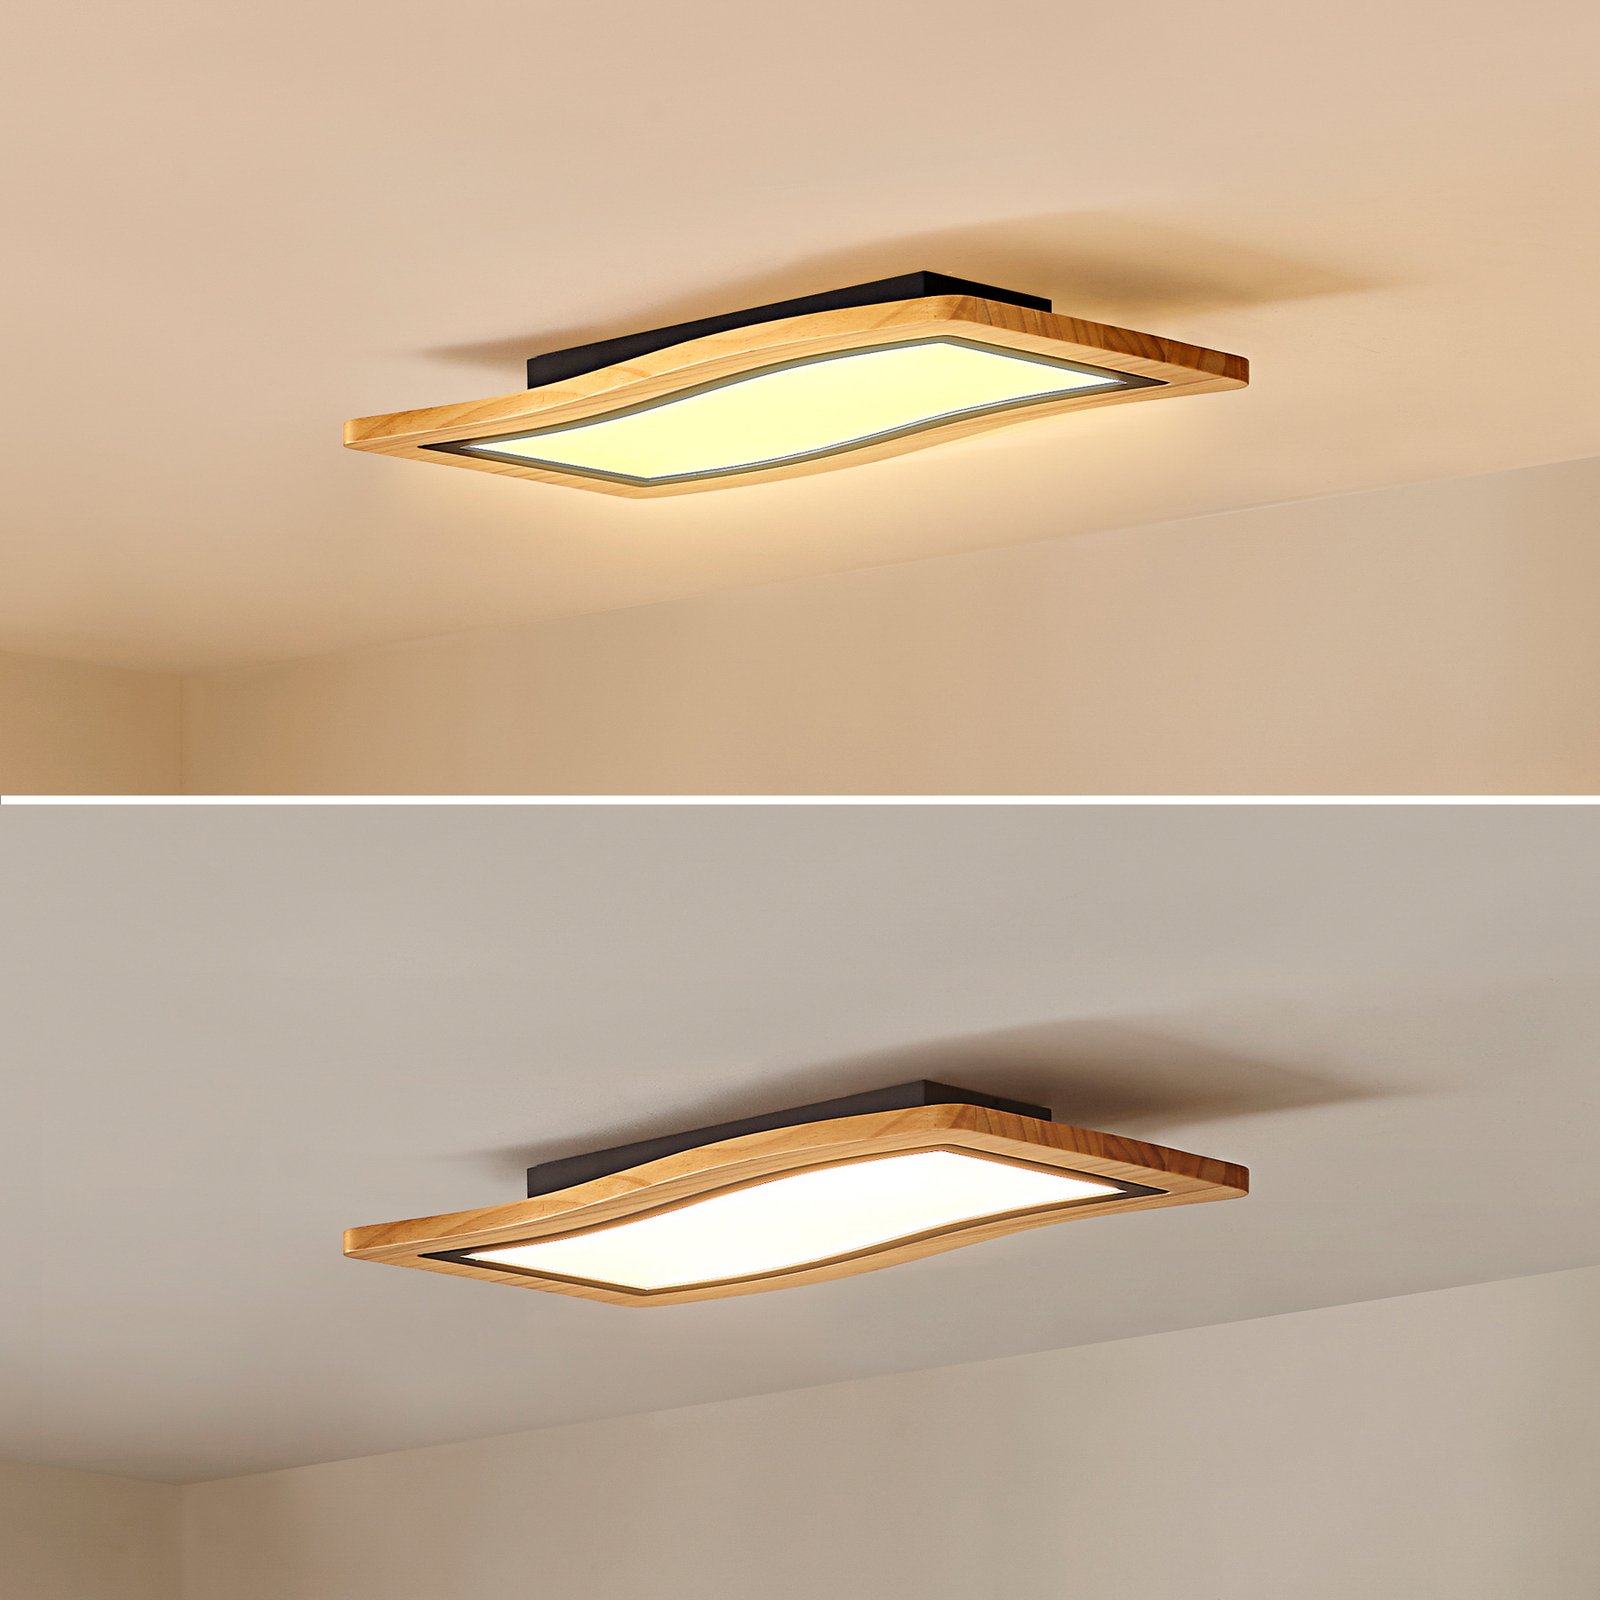 Lucande LED ceiling light Joren, 46 cm long, wood, 3,000 K